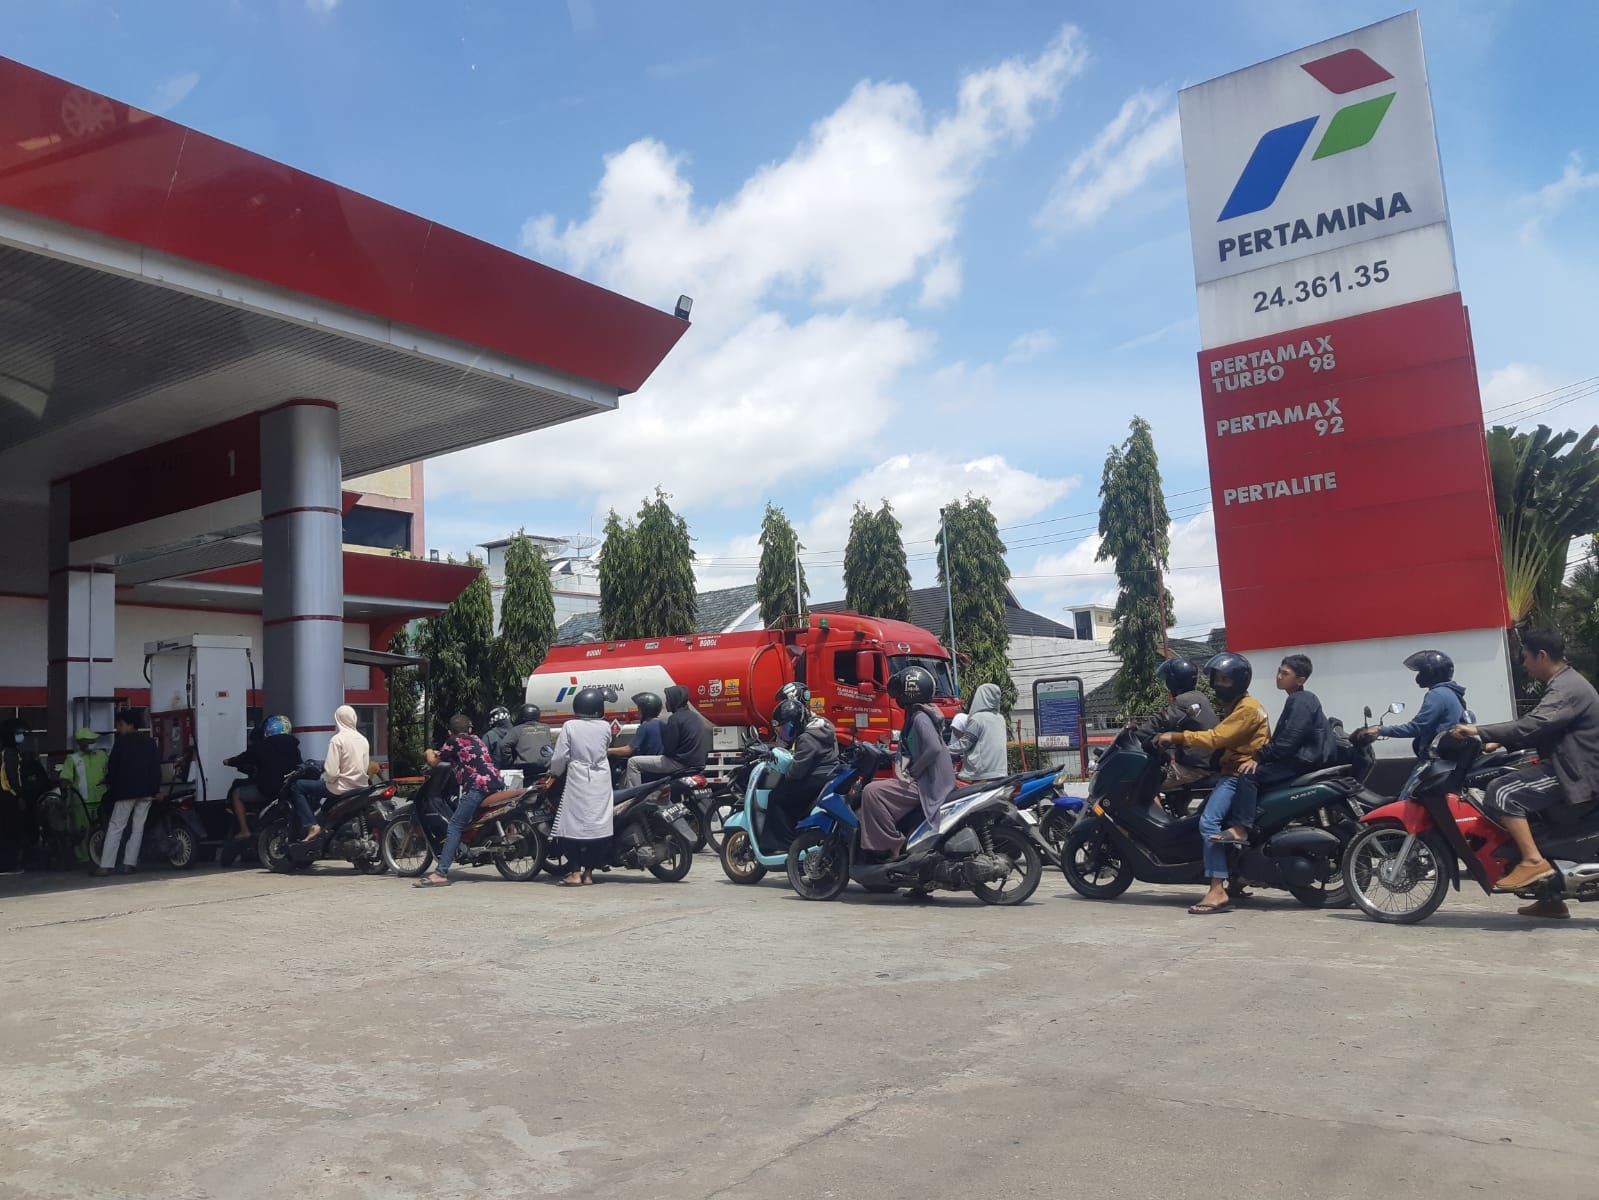 Harga BBM Turun, Harga Terbaru BBM Pertamax Rp 12.800 di Pulau Jawa, Rp 13.050 Per Liter di Jambi